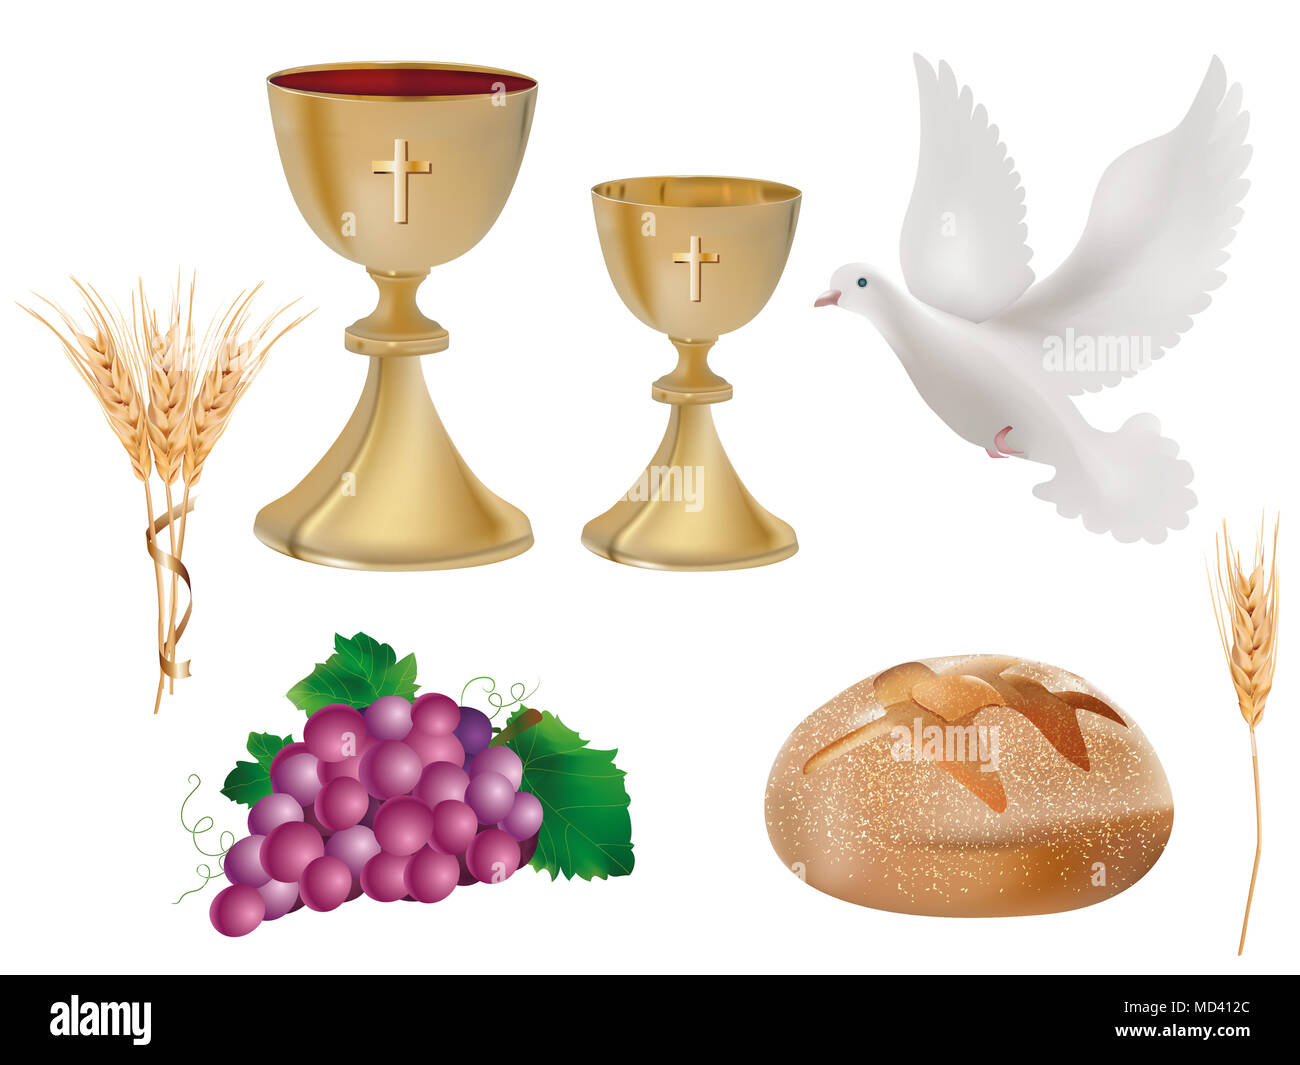 Isolierte christliche Symbole: Goldener Kelch mit Wein, Taube, Trauben, Brot, Weizenohr. Christliche Zeichen. Letzte Abendmahlssymbole.3D-realistische Abbildung Stockfoto